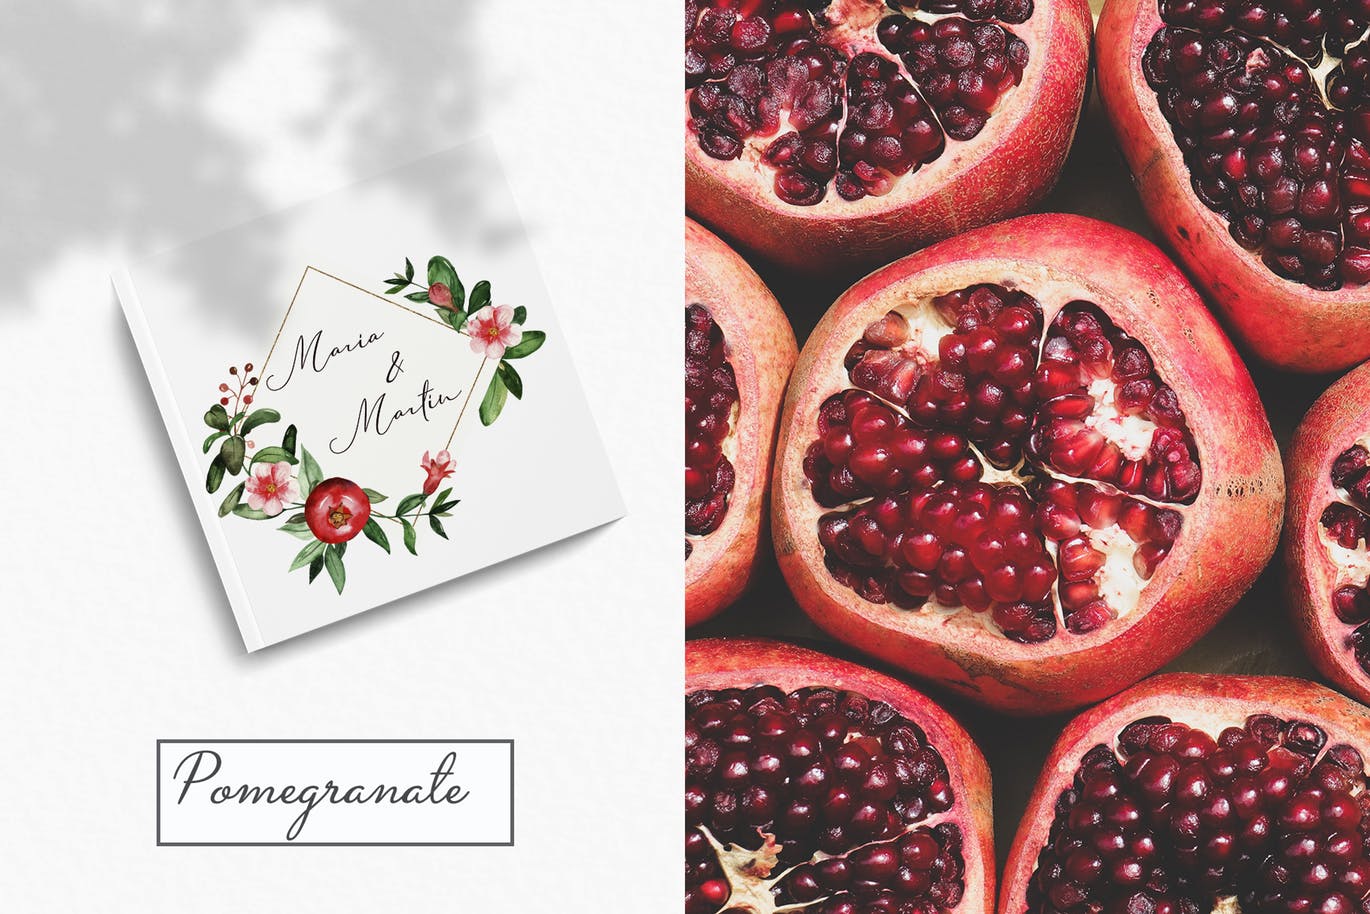 水彩石榴剪贴画/花框/花环16图库精选设计素材 Watercolor pomegranate. Clipart, frames, wreaths插图(9)